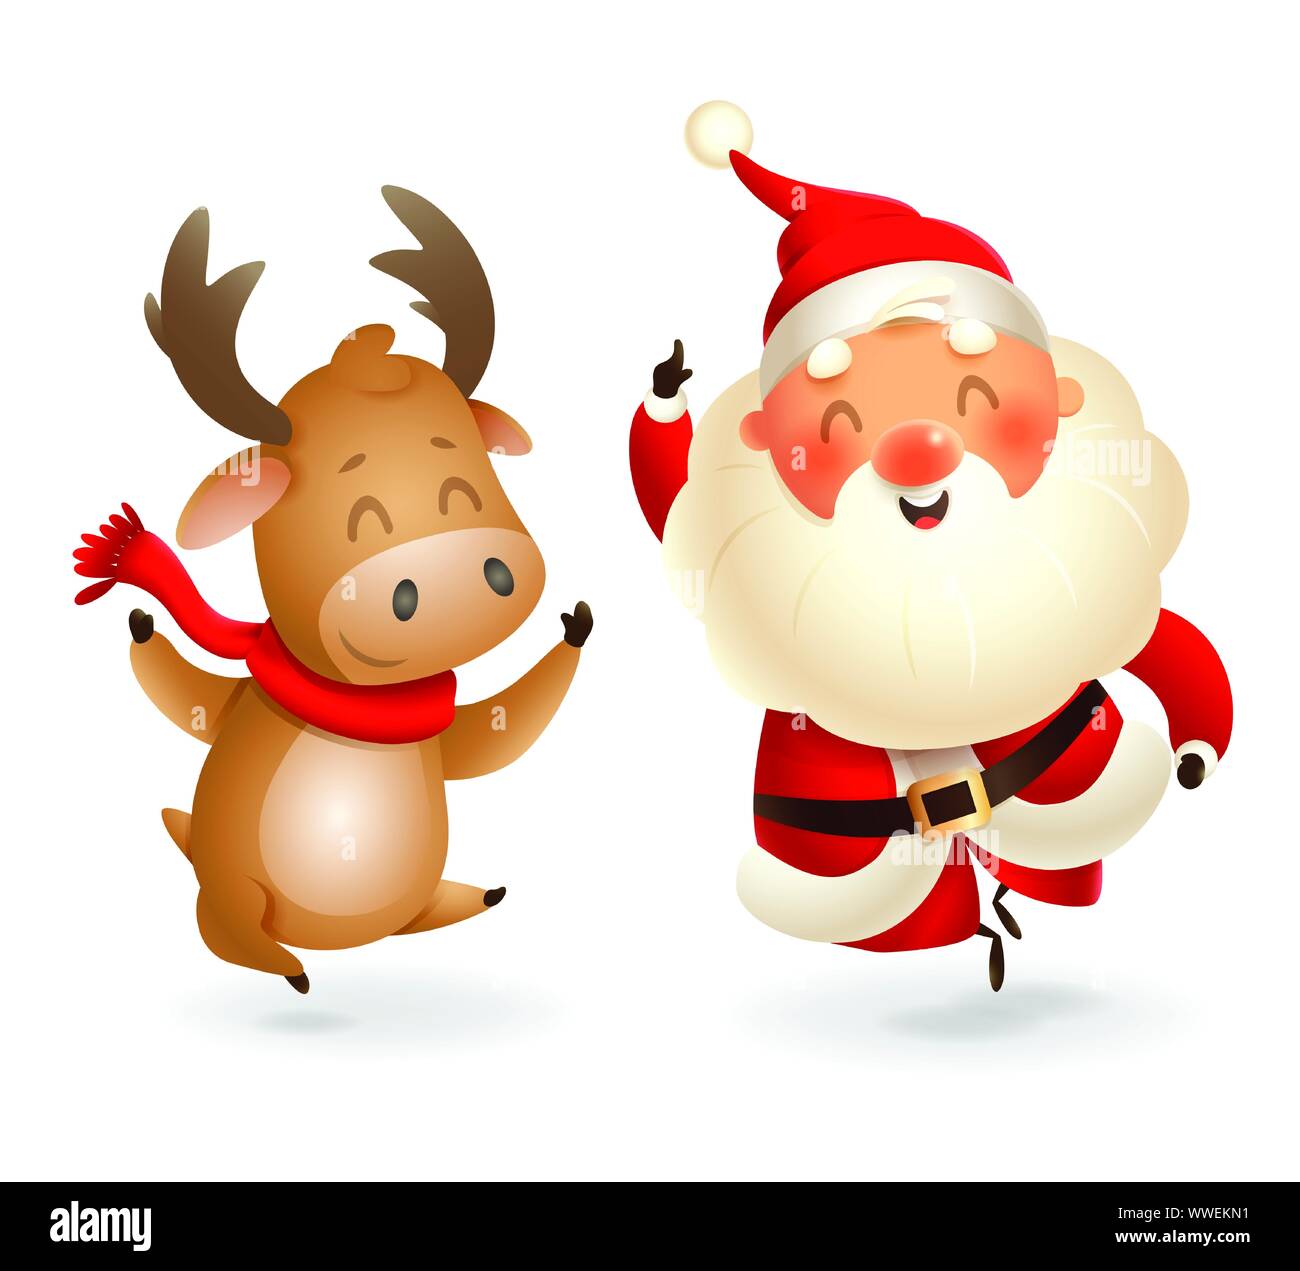 Weihnachtsmann und Elch - glückliche Ausdruck-Finger-Vector Illustration auf transparentem Hintergrund isoliert Stock Vektor